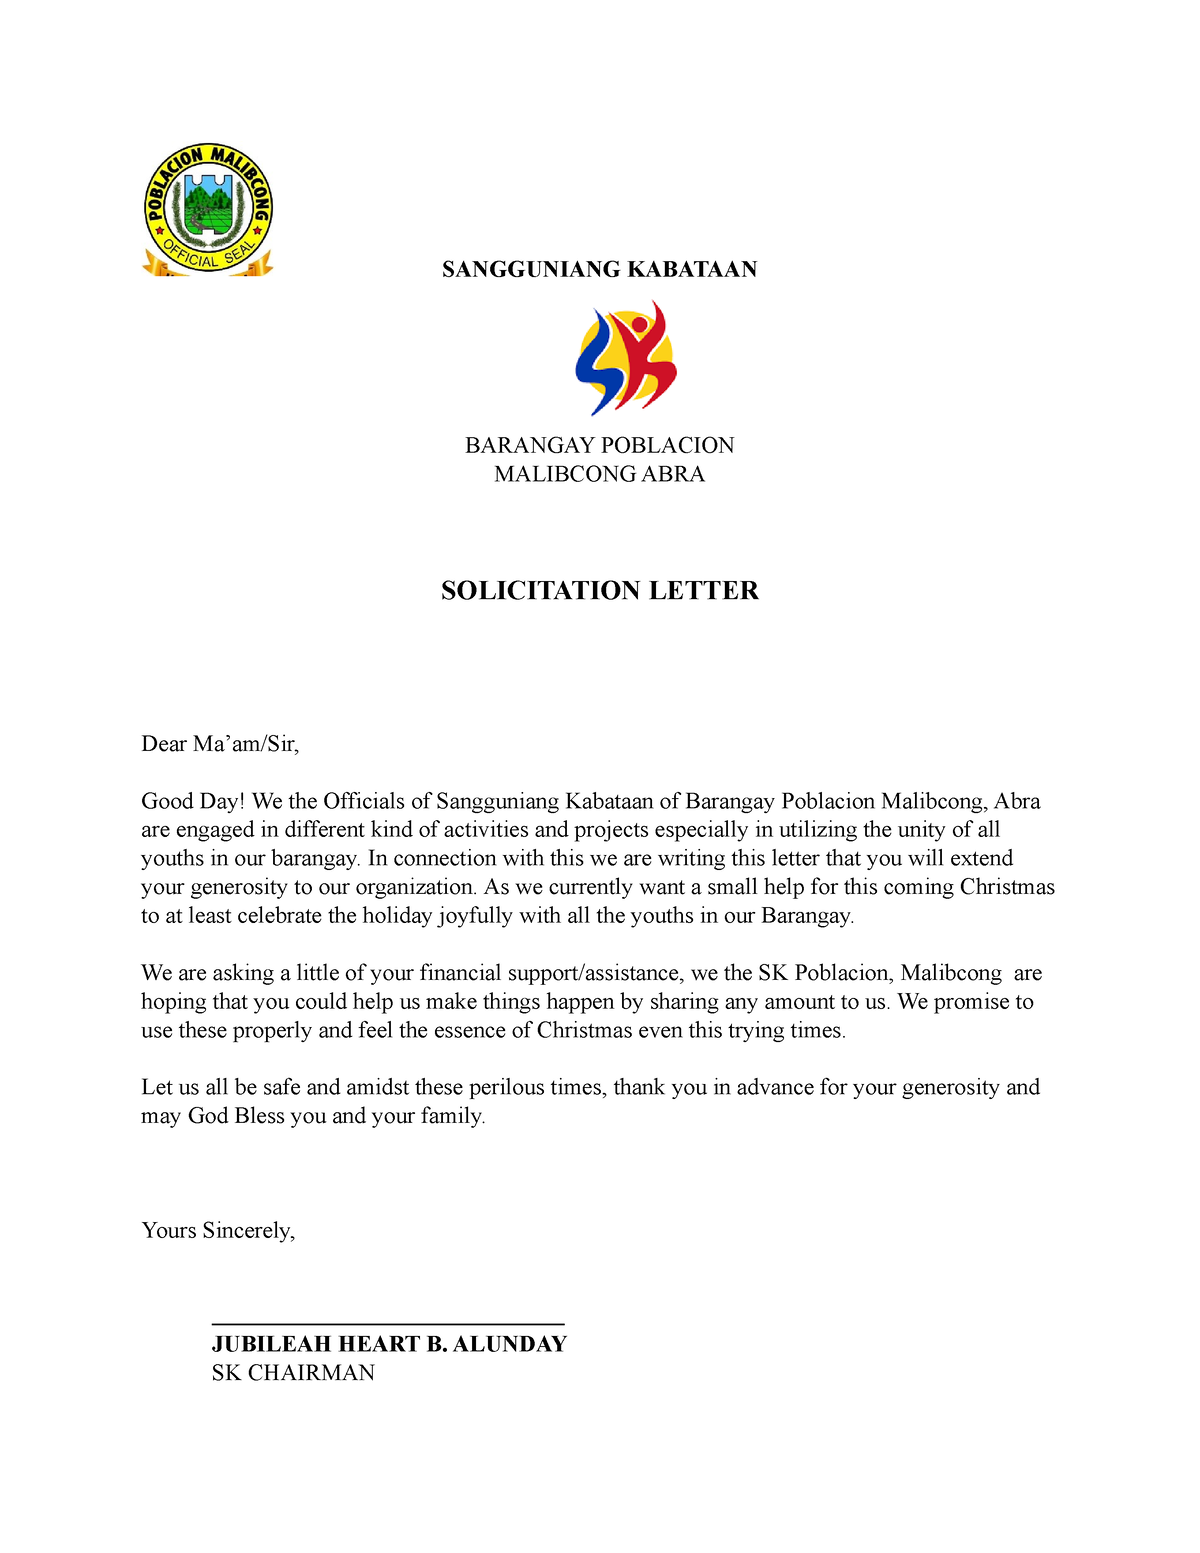 Solicitation Letter Sangguniang Kabataan Barangay Poblacion Malibcong